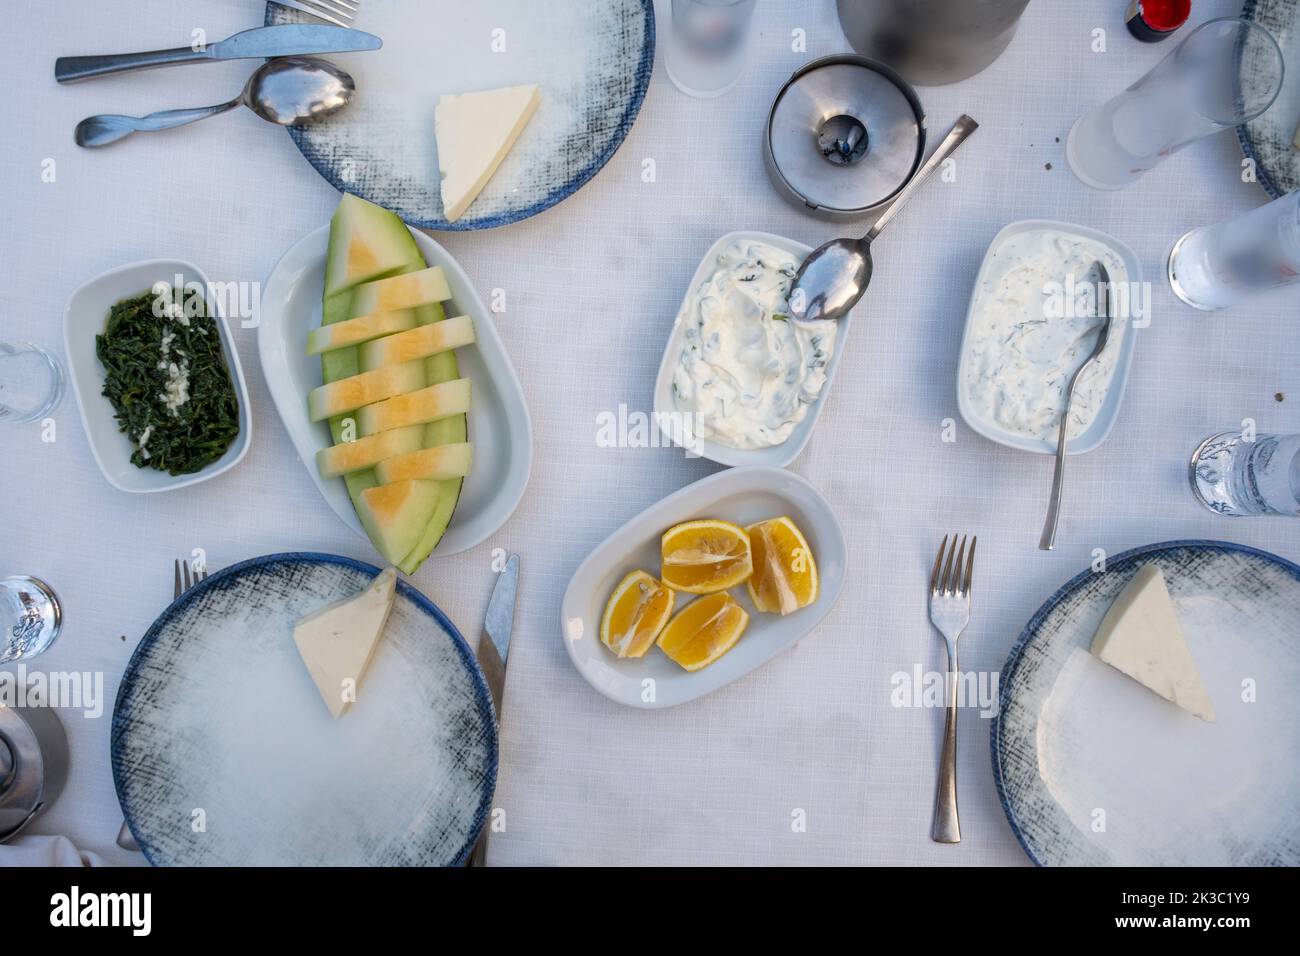 Türkischer Raki-Tisch mit Melone, Zitrone und Vorspeise, traditioneller türkischer Alkohol, bekannt als Rakı, chillen Sie mit Freunden im Restaurant, Essen und Essen Idee Stockfoto